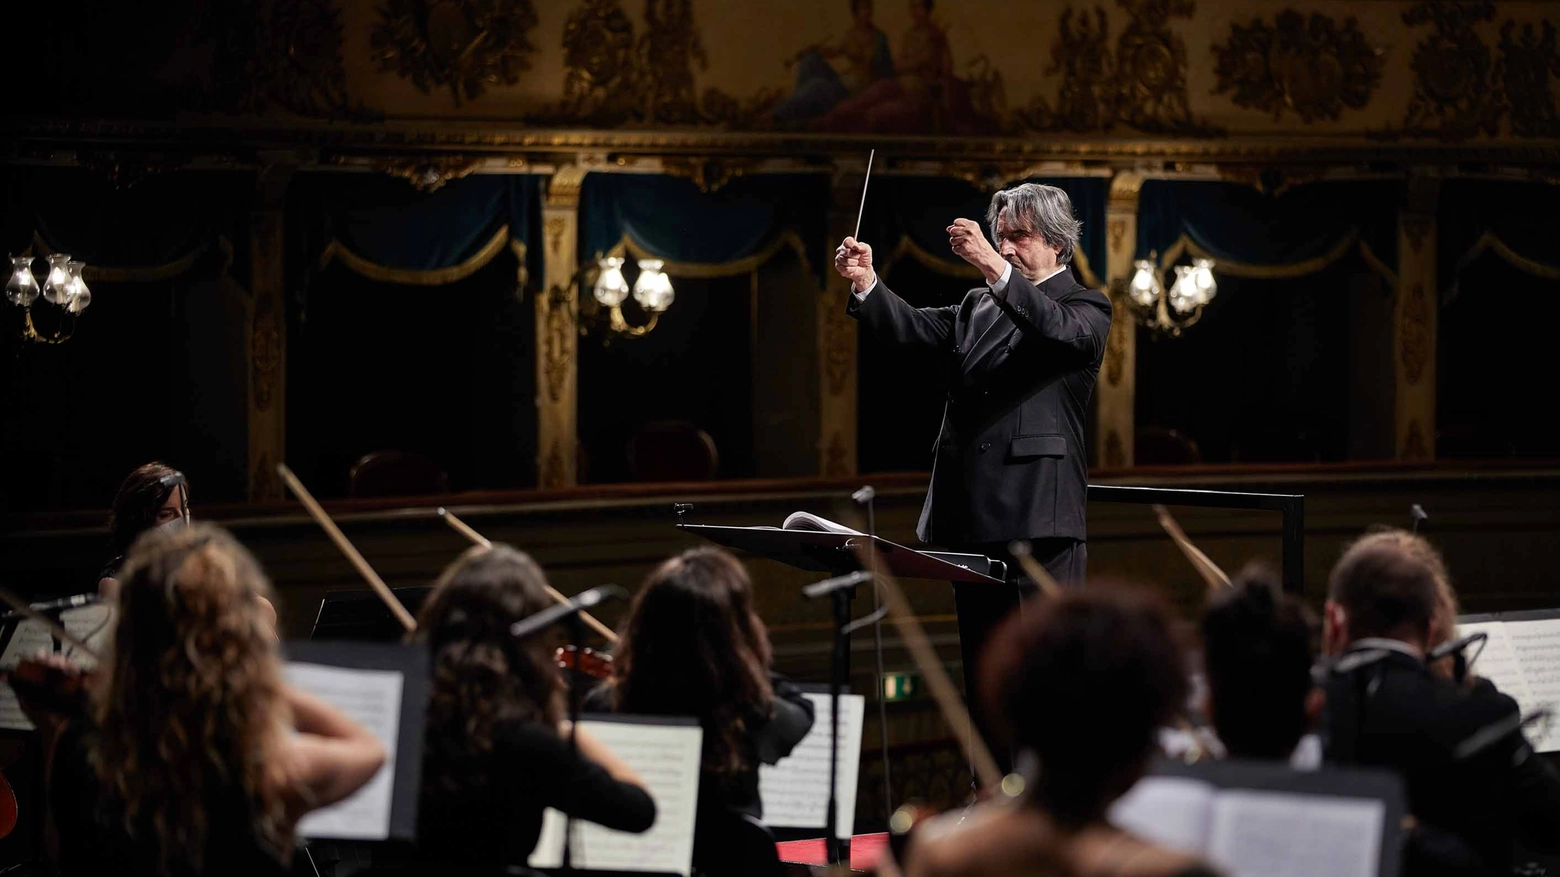 L'Orchestra Cherubini diretta dal maestro Muti.